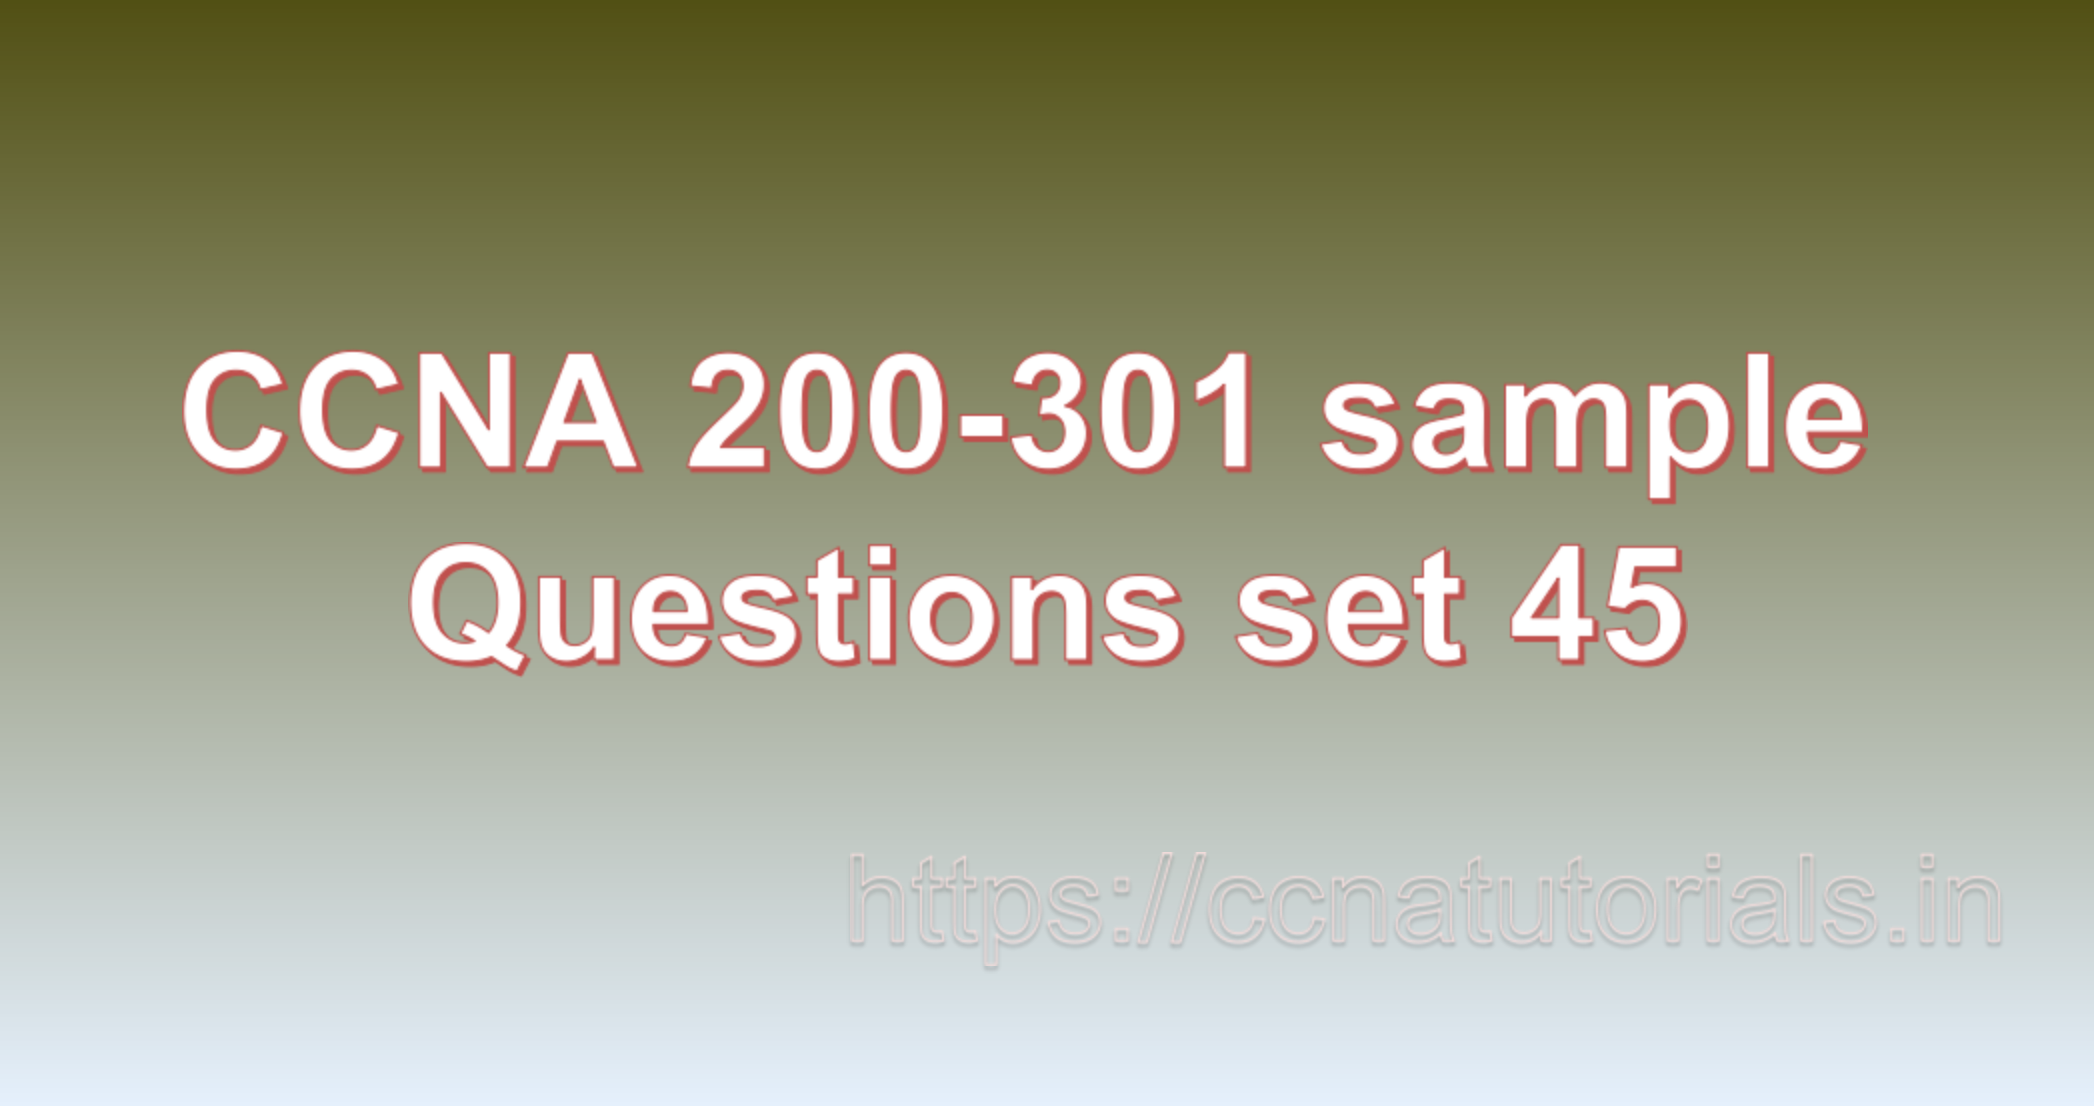 ccna sample questions set 45, ccna tutorials, CCNA Exam, ccna